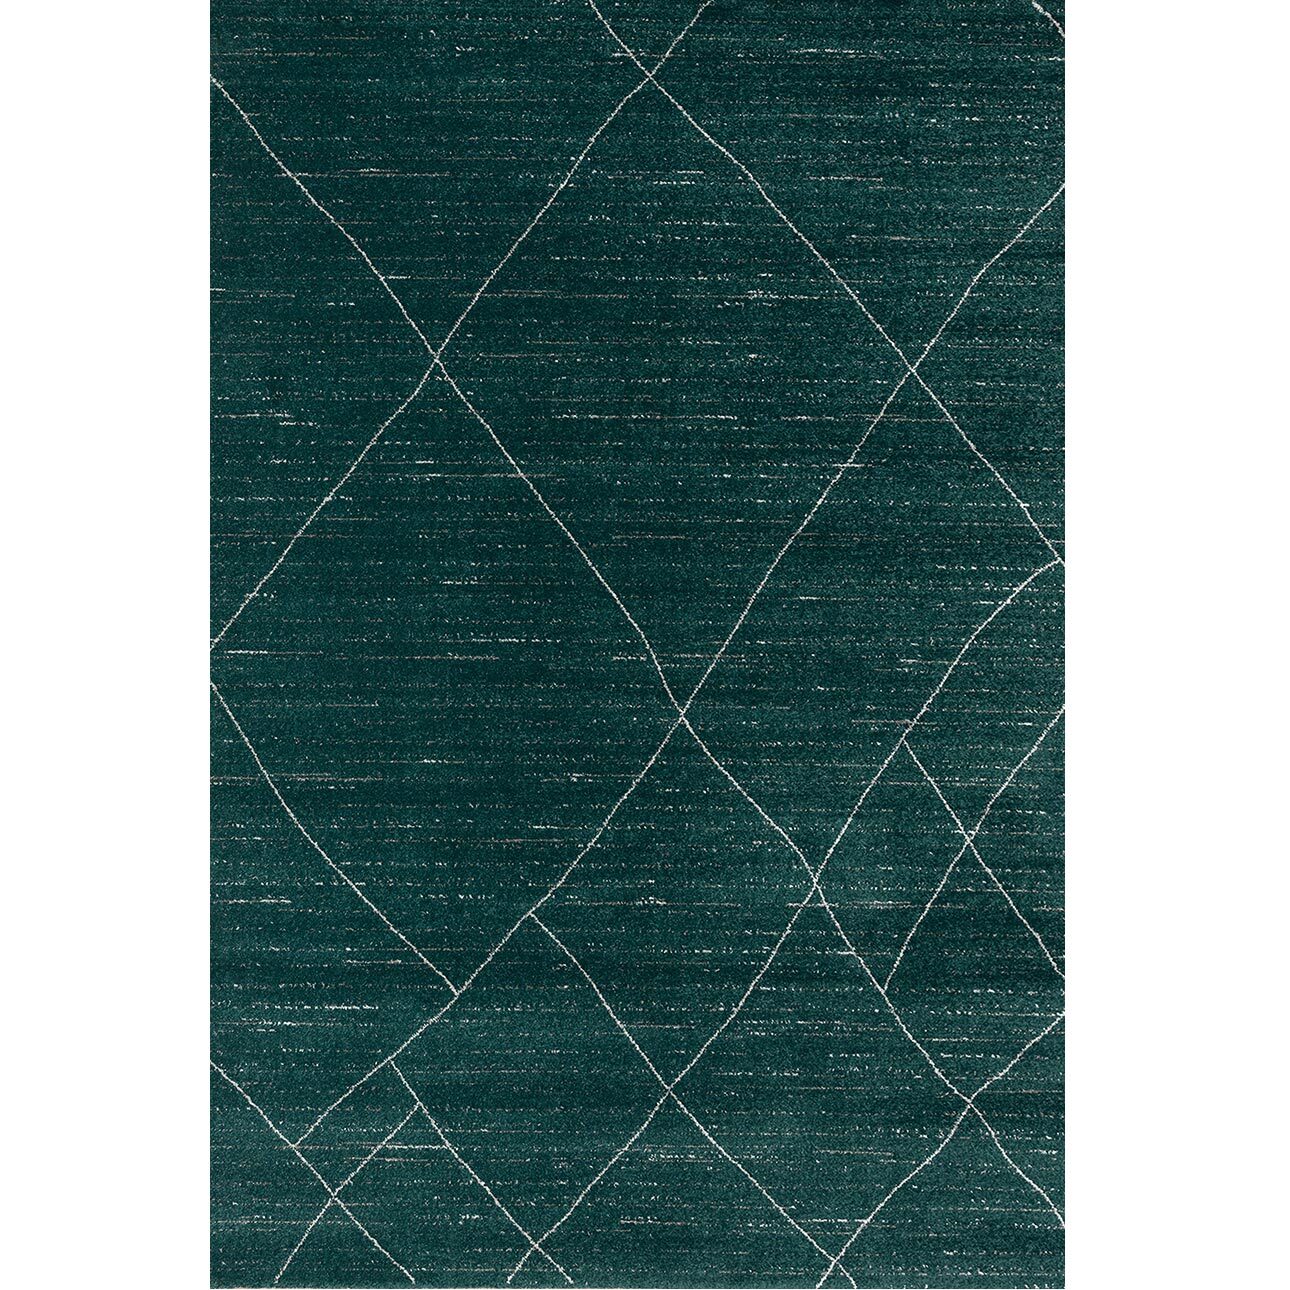 Teppich Sevilla forest green/aspen silver 160x230cm, 160 x 230 cm günstig online kaufen